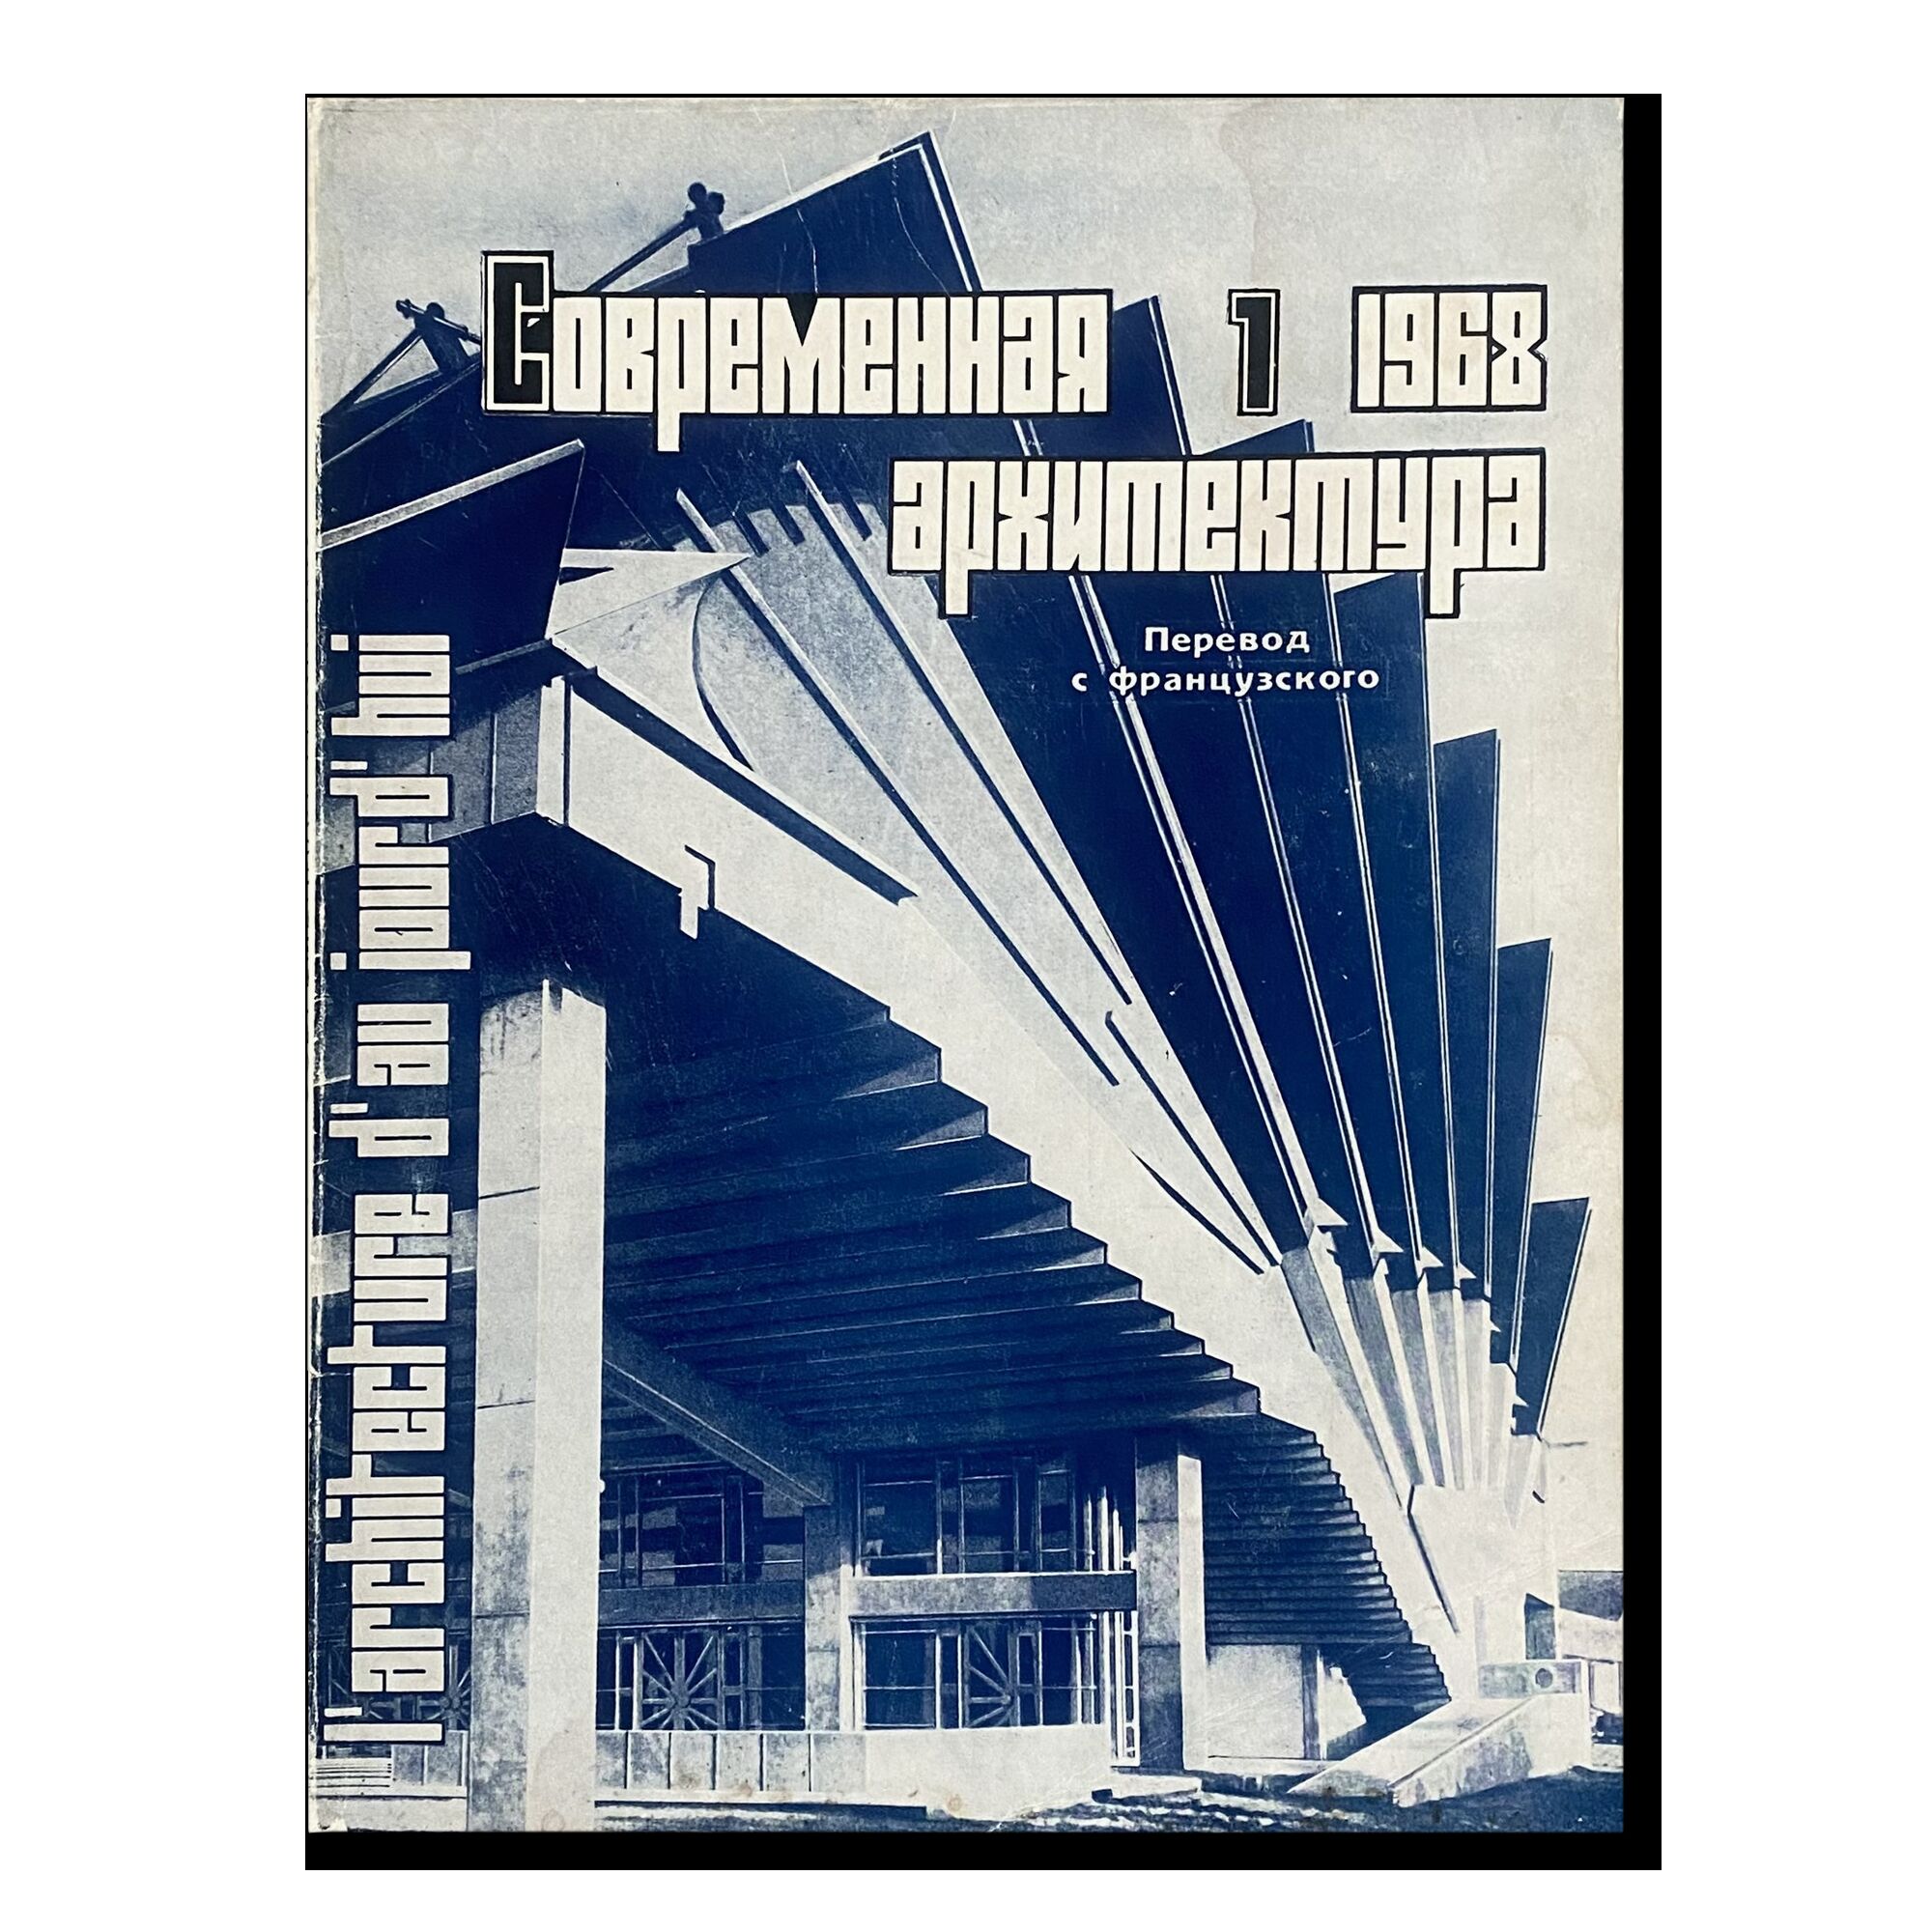 Журнал "Современная архитектура" (1) 1968